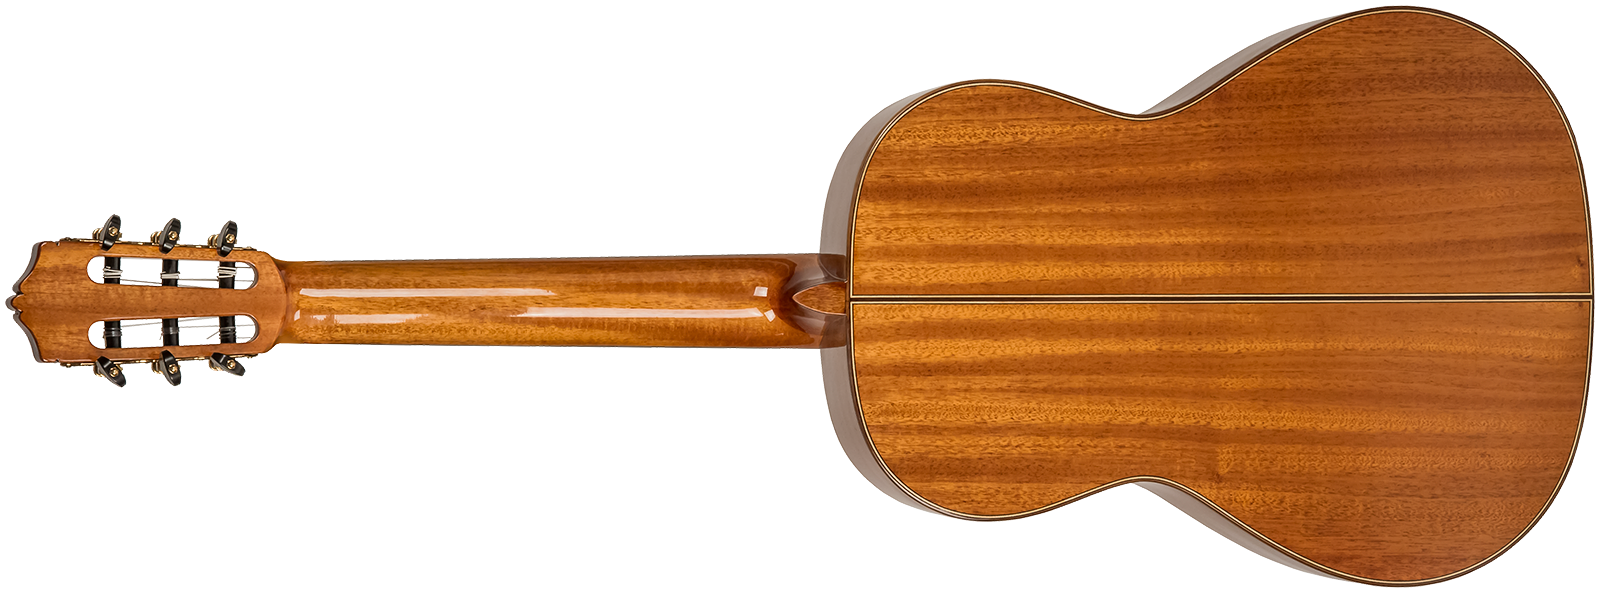 Martinez Mcg 118s Standard 4/4 Epicea Acajou Eb +housse - Natural - Guitare Classique Format 4/4 - Variation 1